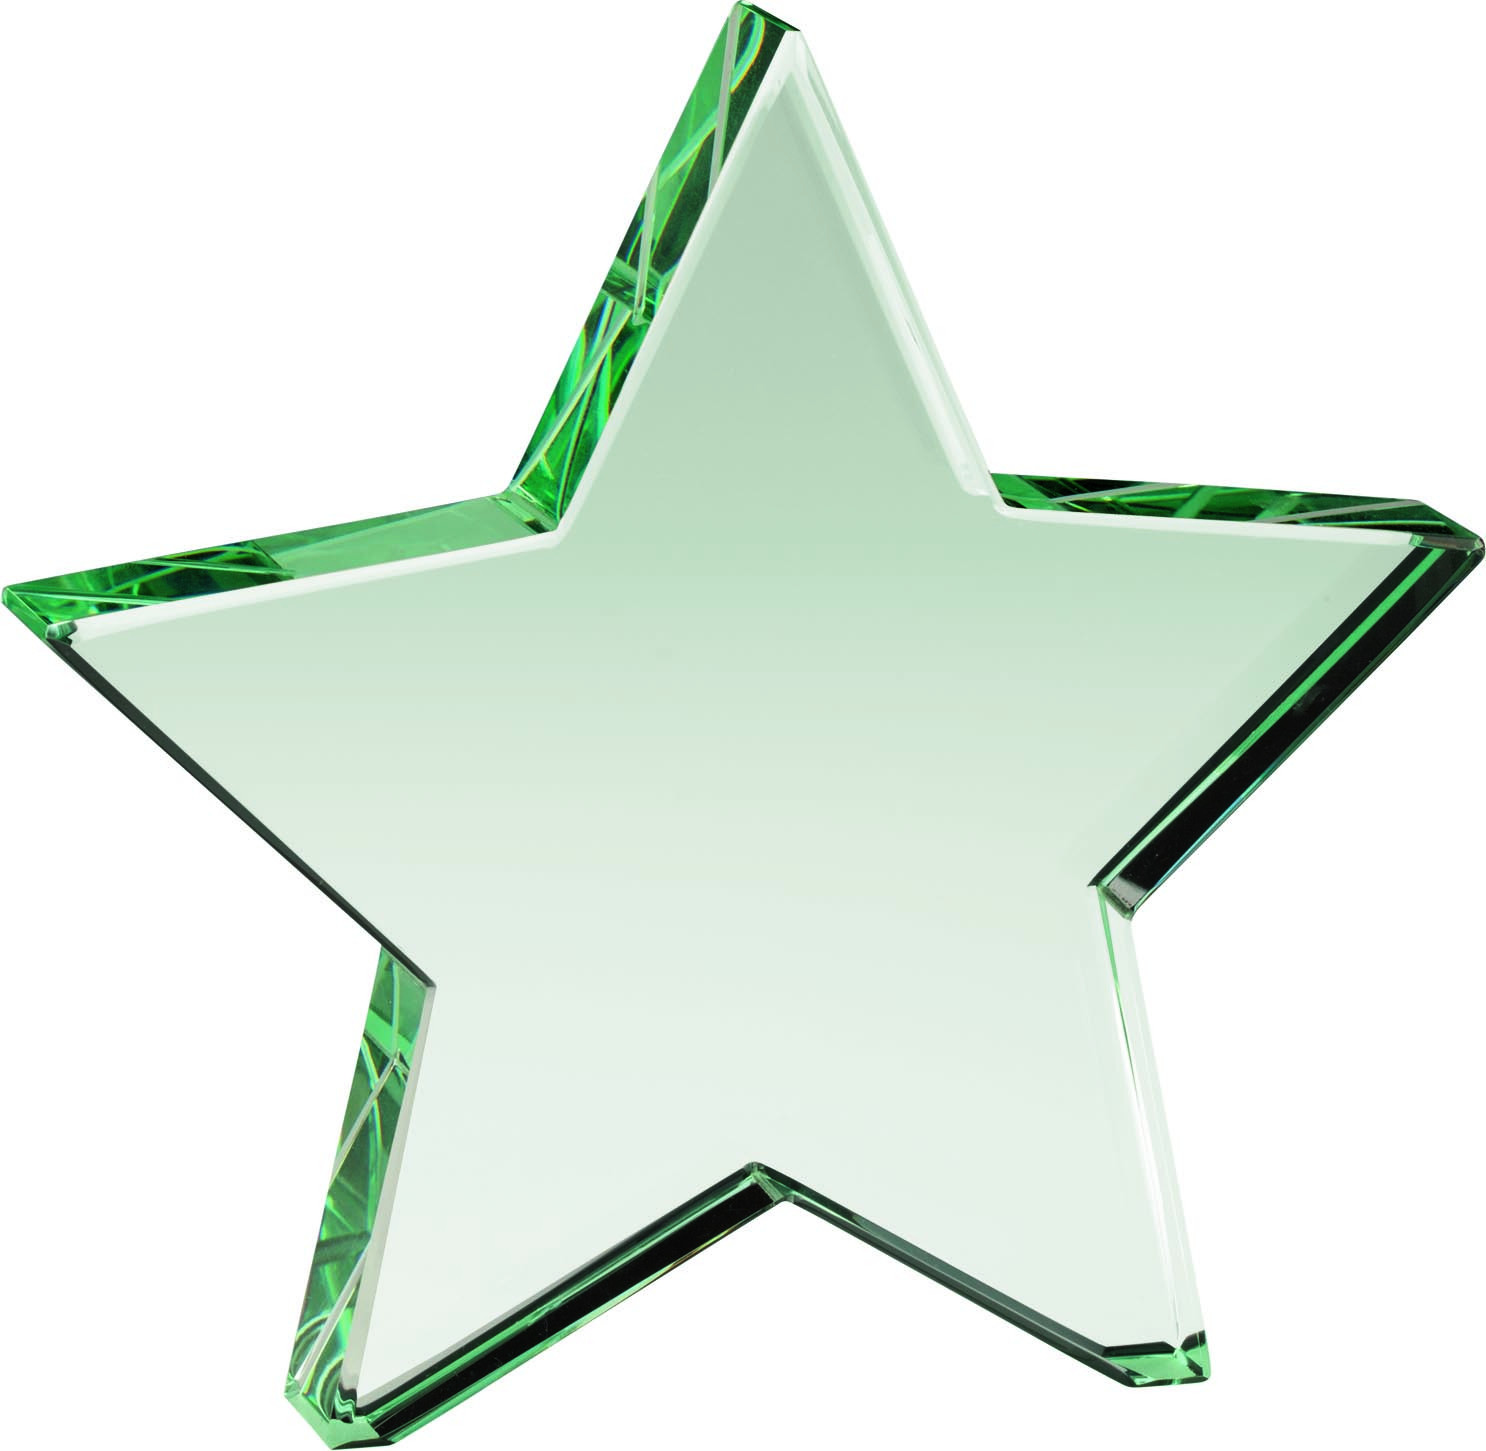 Aurora Jade Star Glass Award